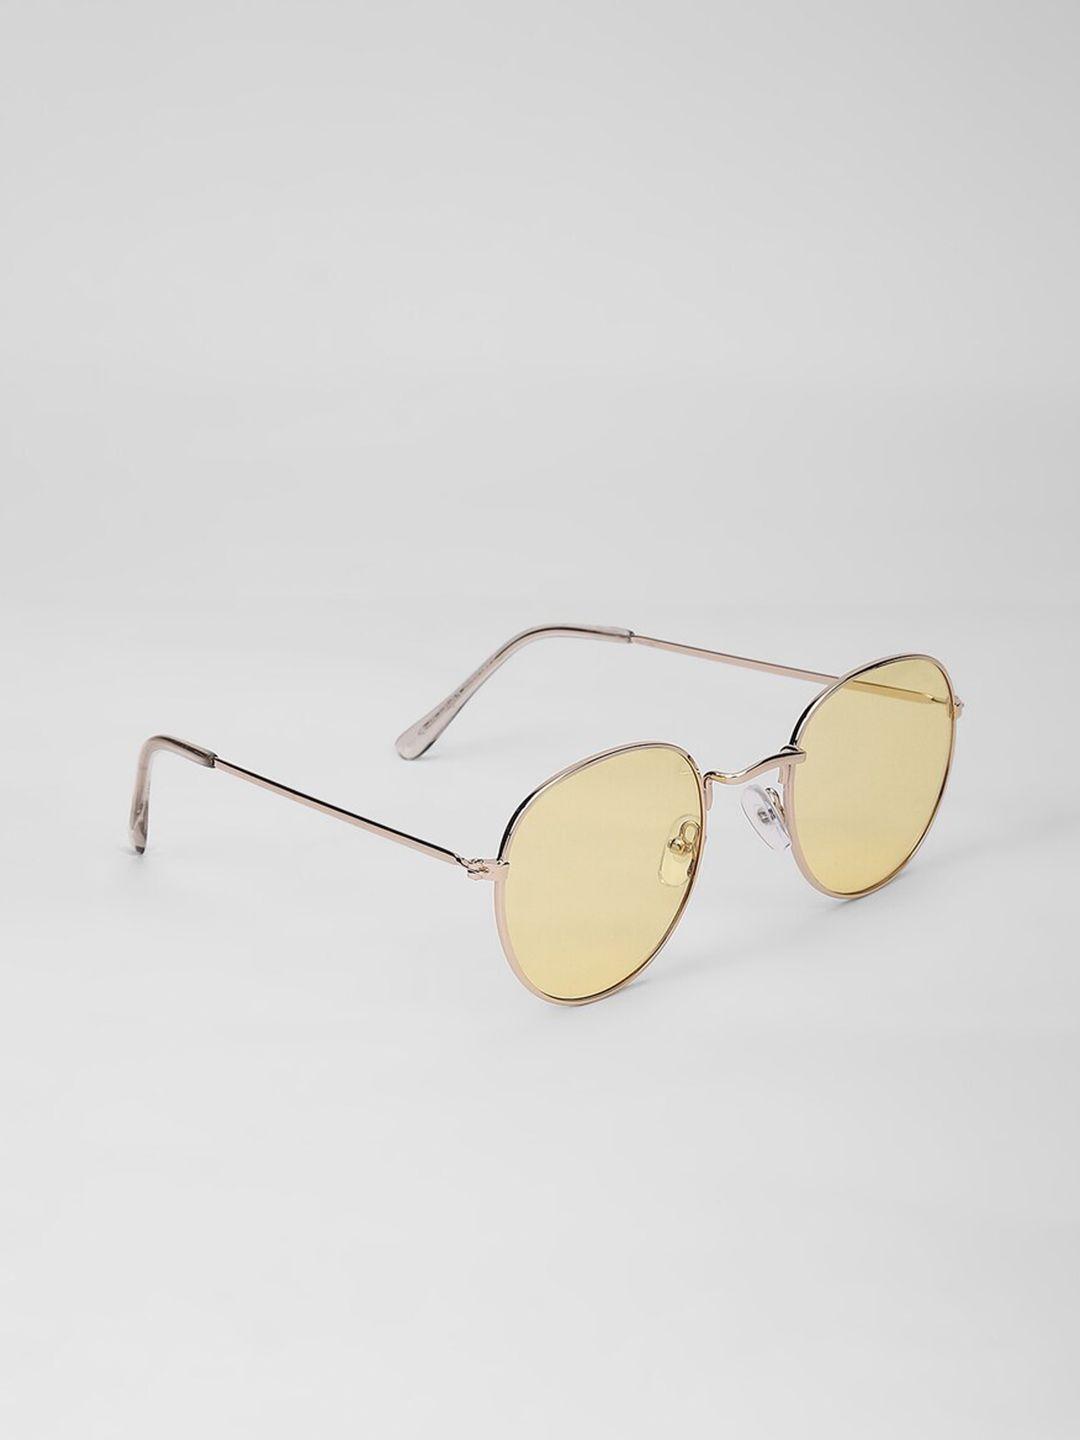 forever-21-women-oval-sunglasses-f20045420101